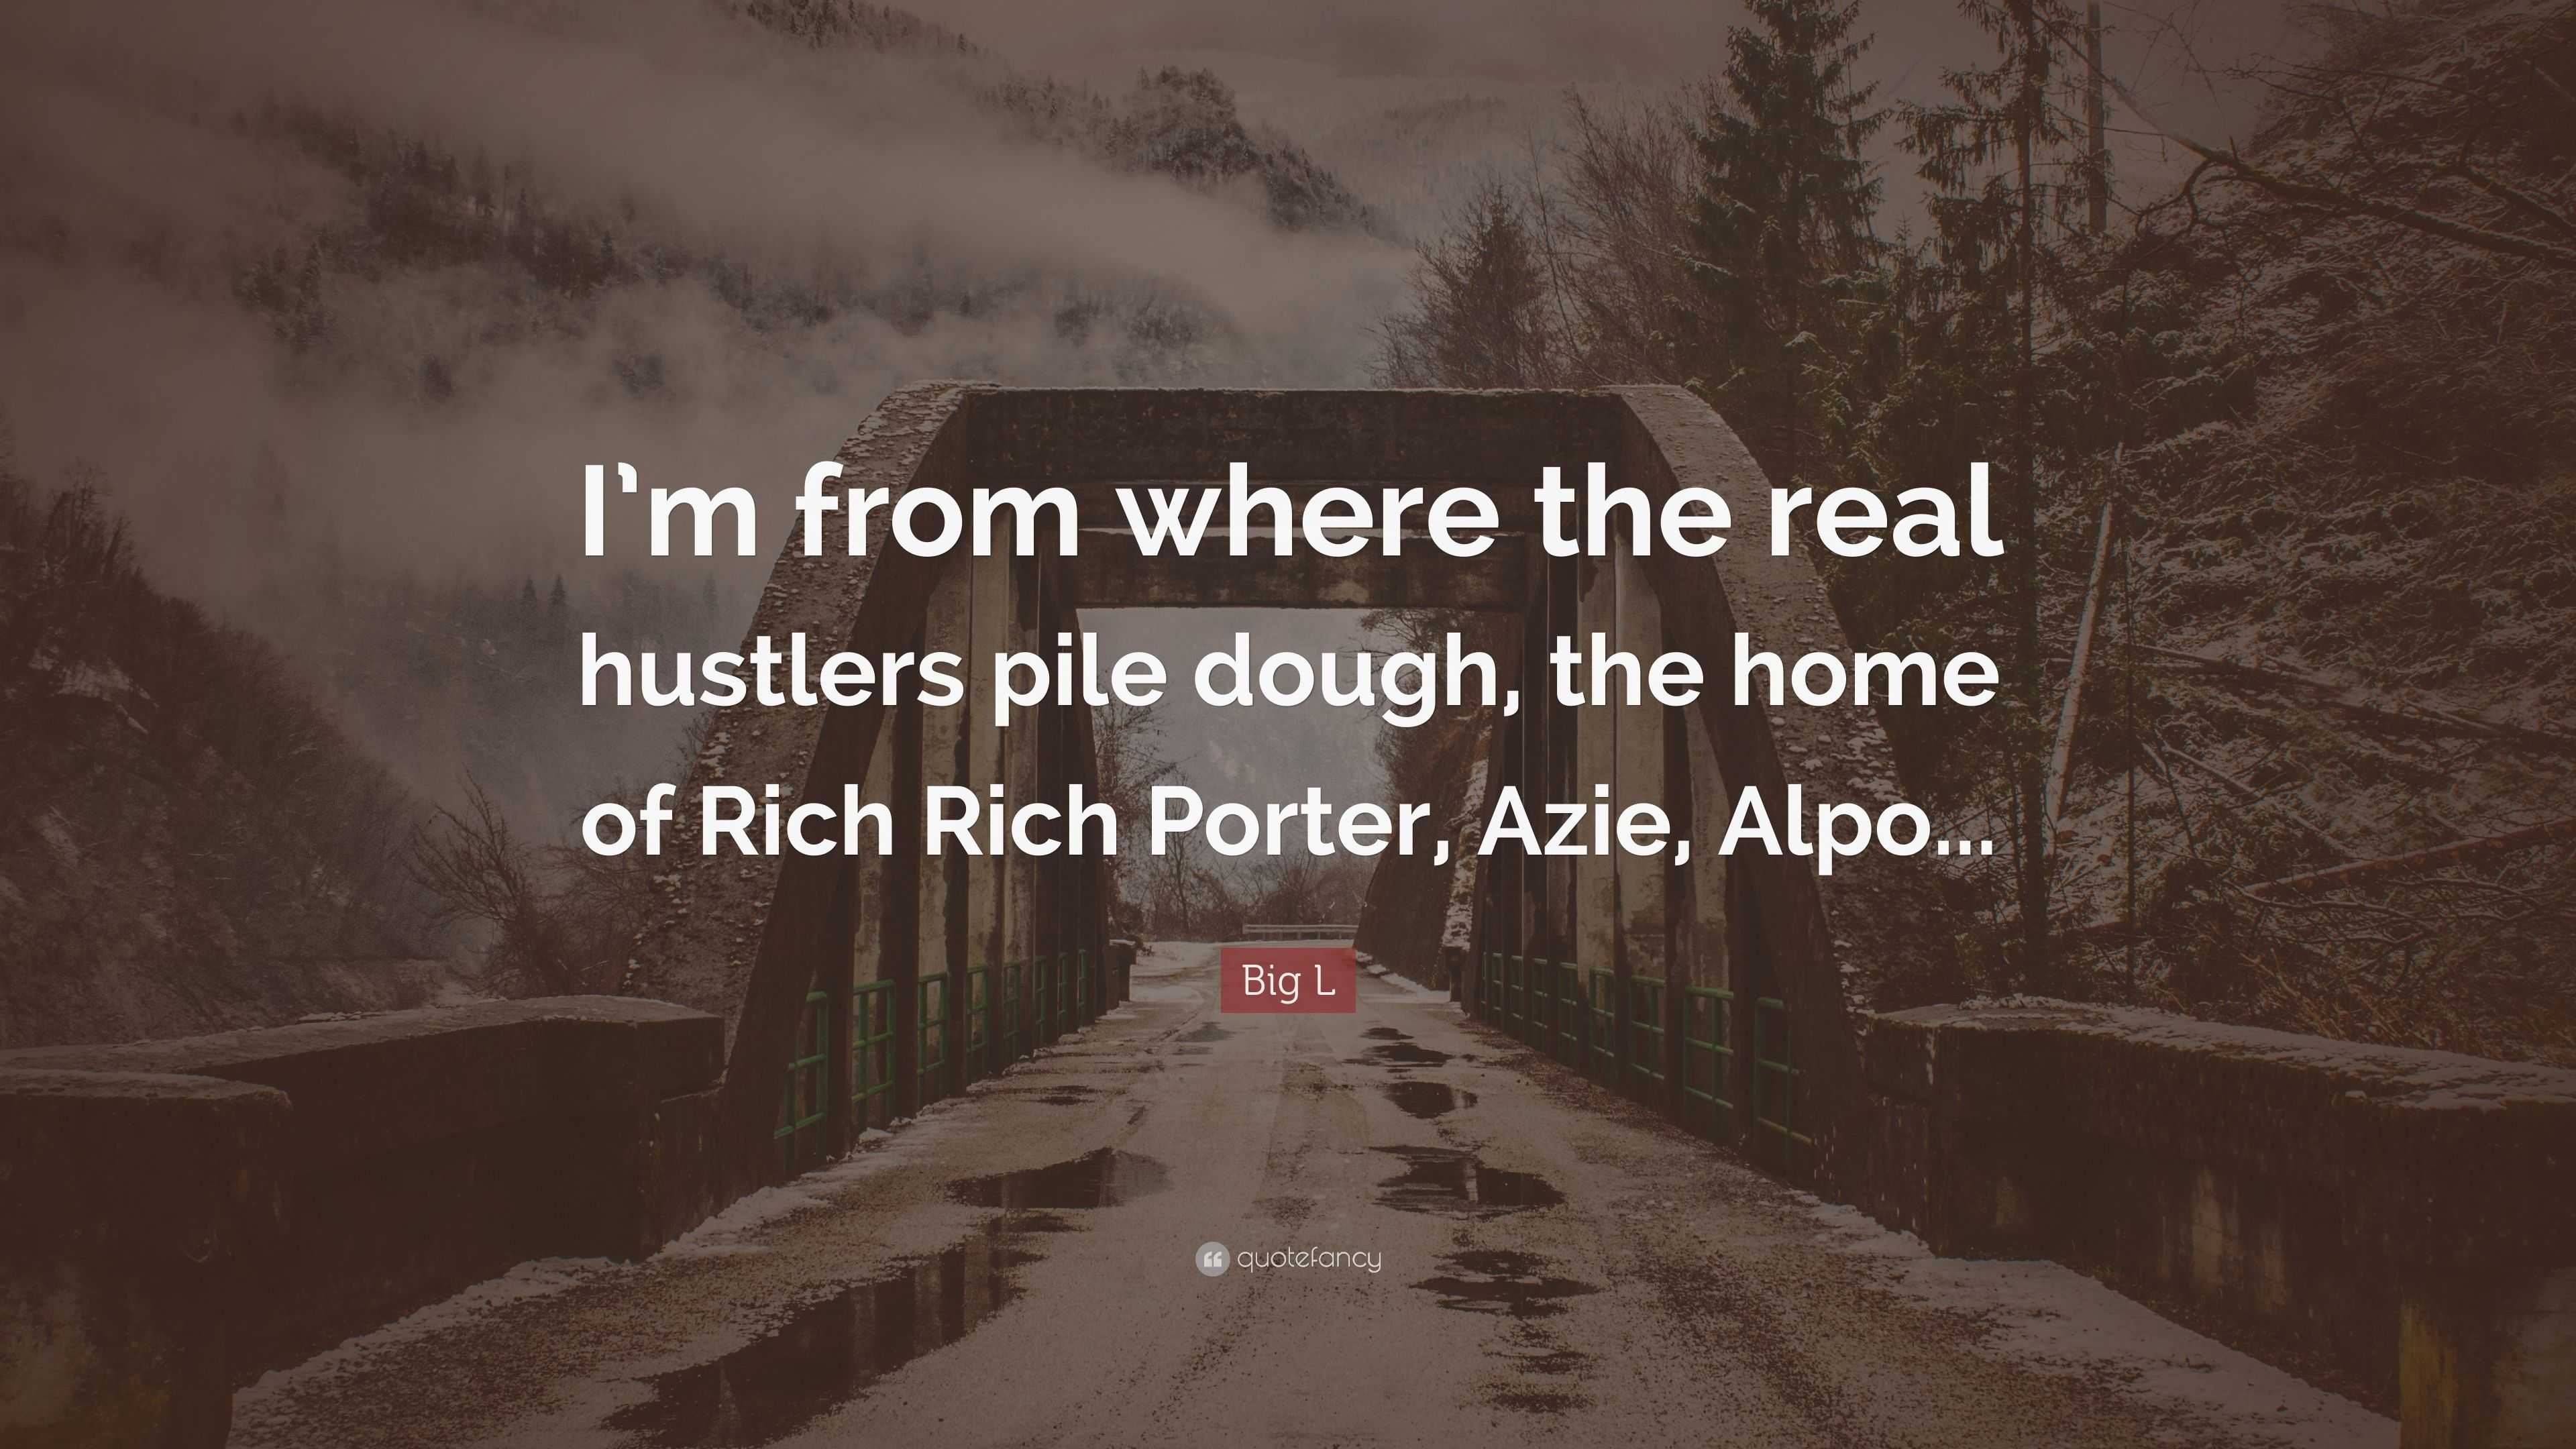 alpo and rich porter